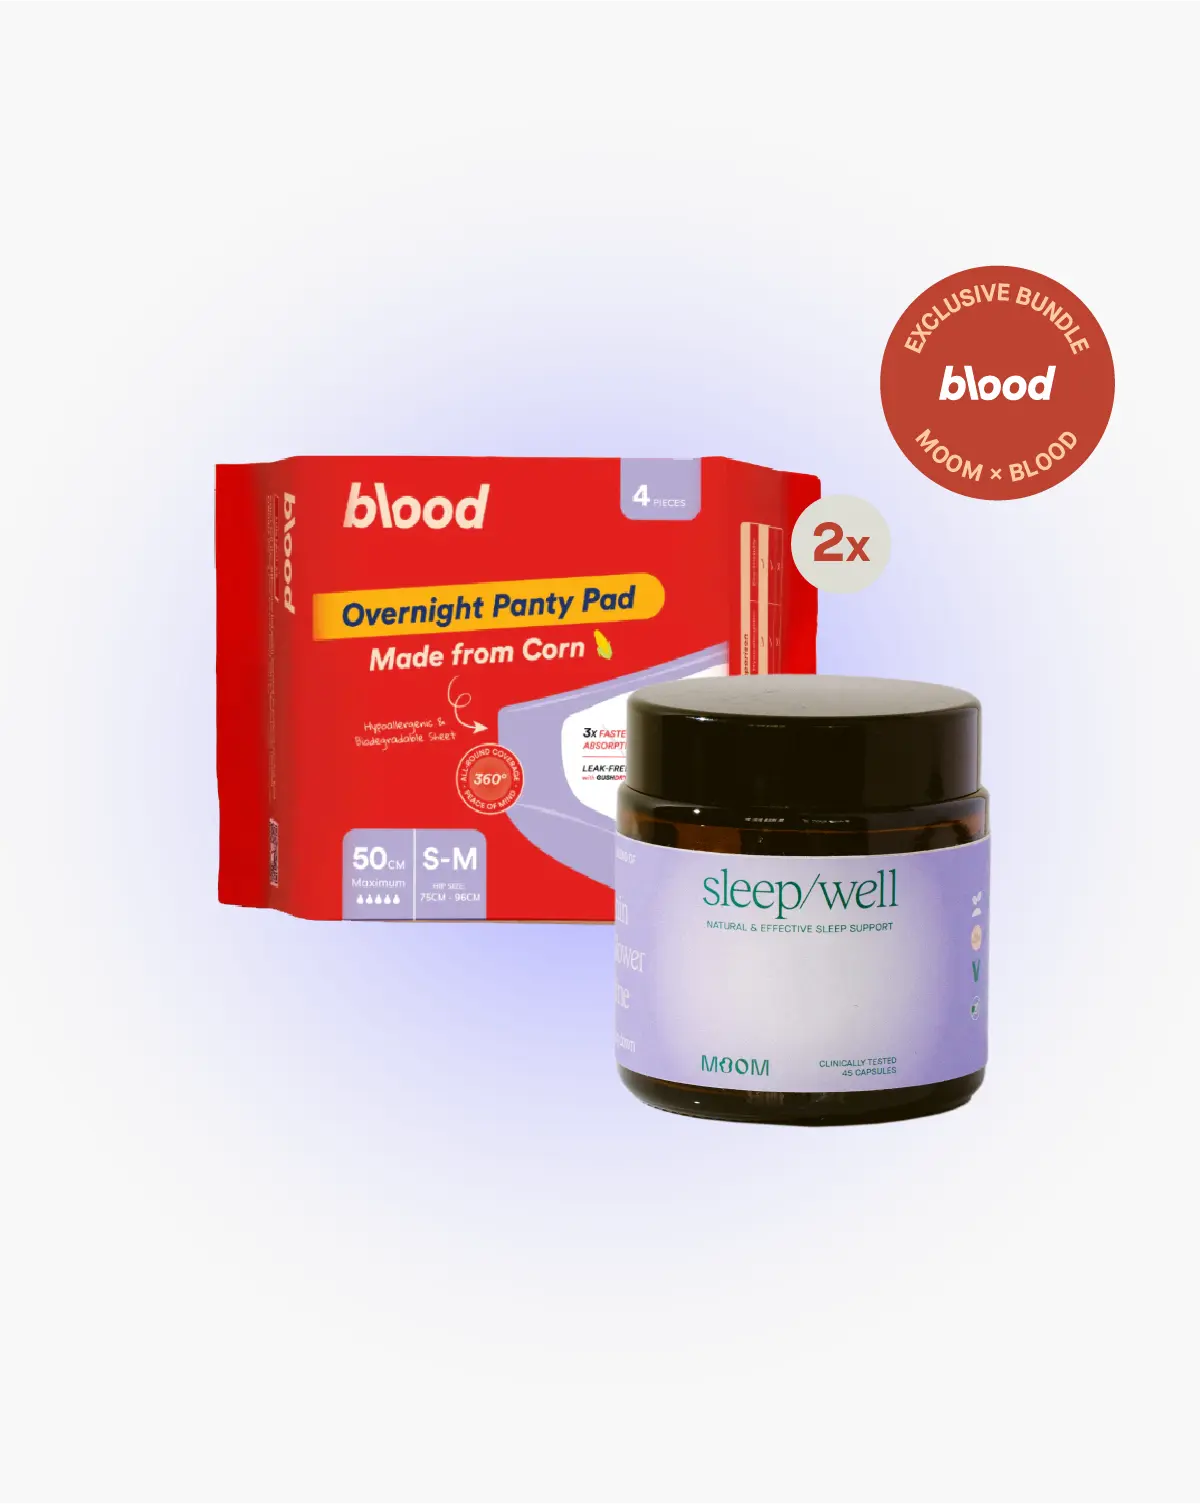 Moom x Blood: The Sleepy Kit Bundle